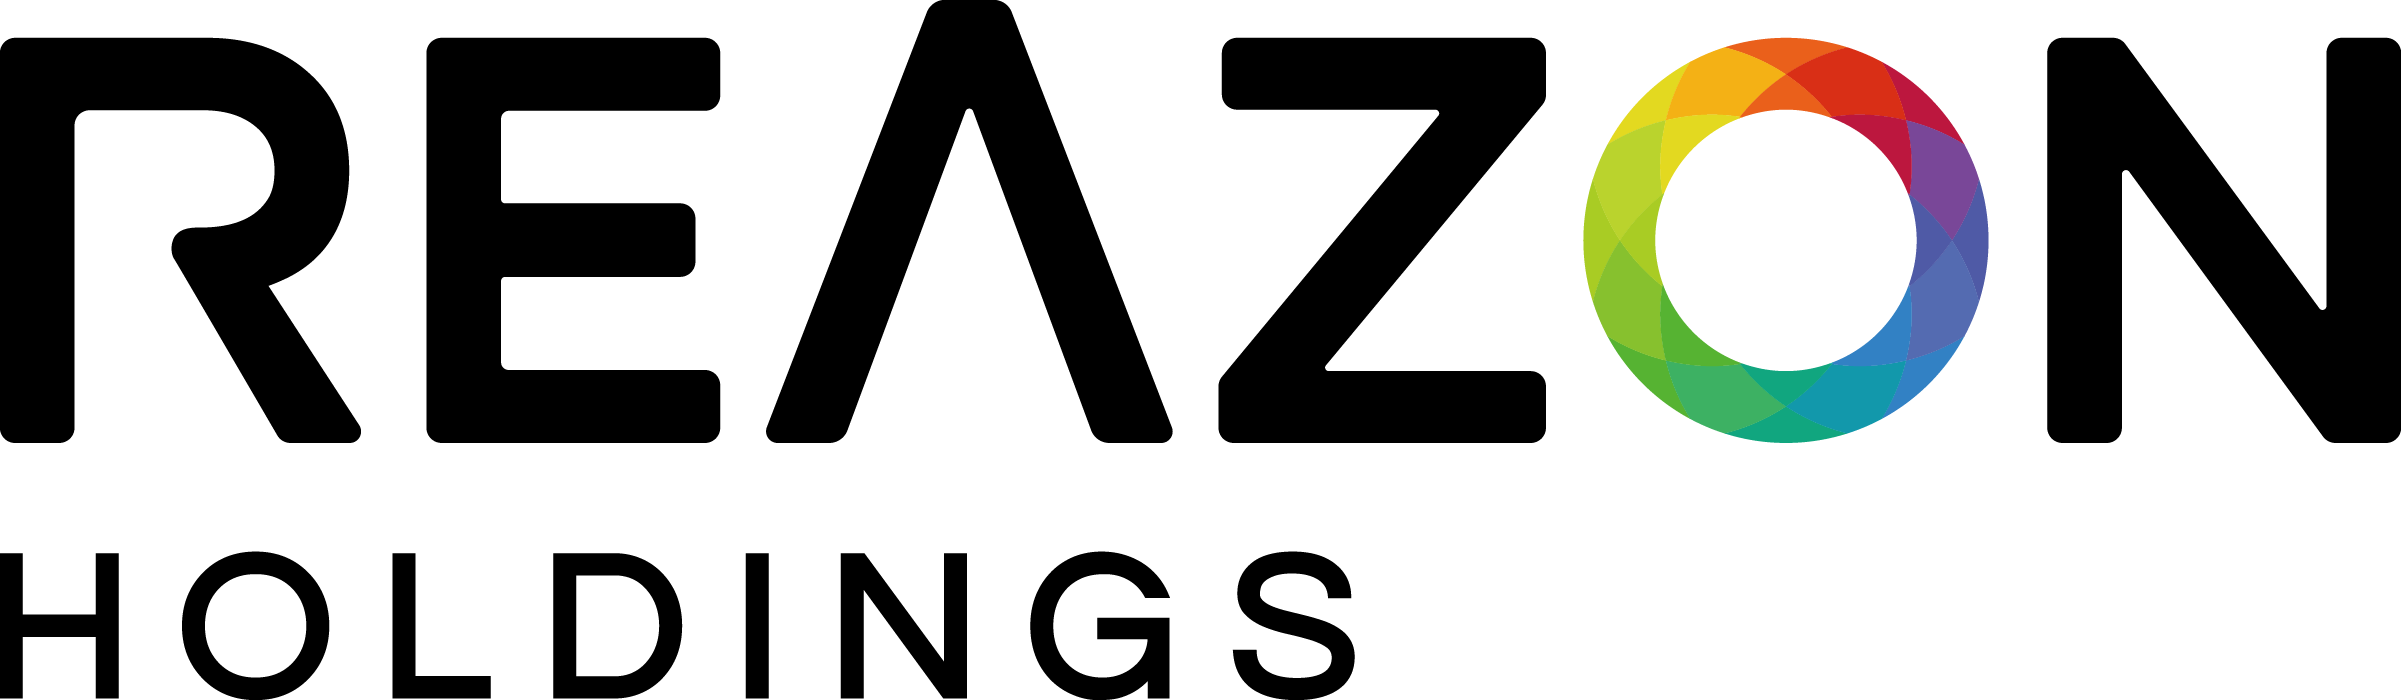 レアゾン・ホールディングスのロゴ